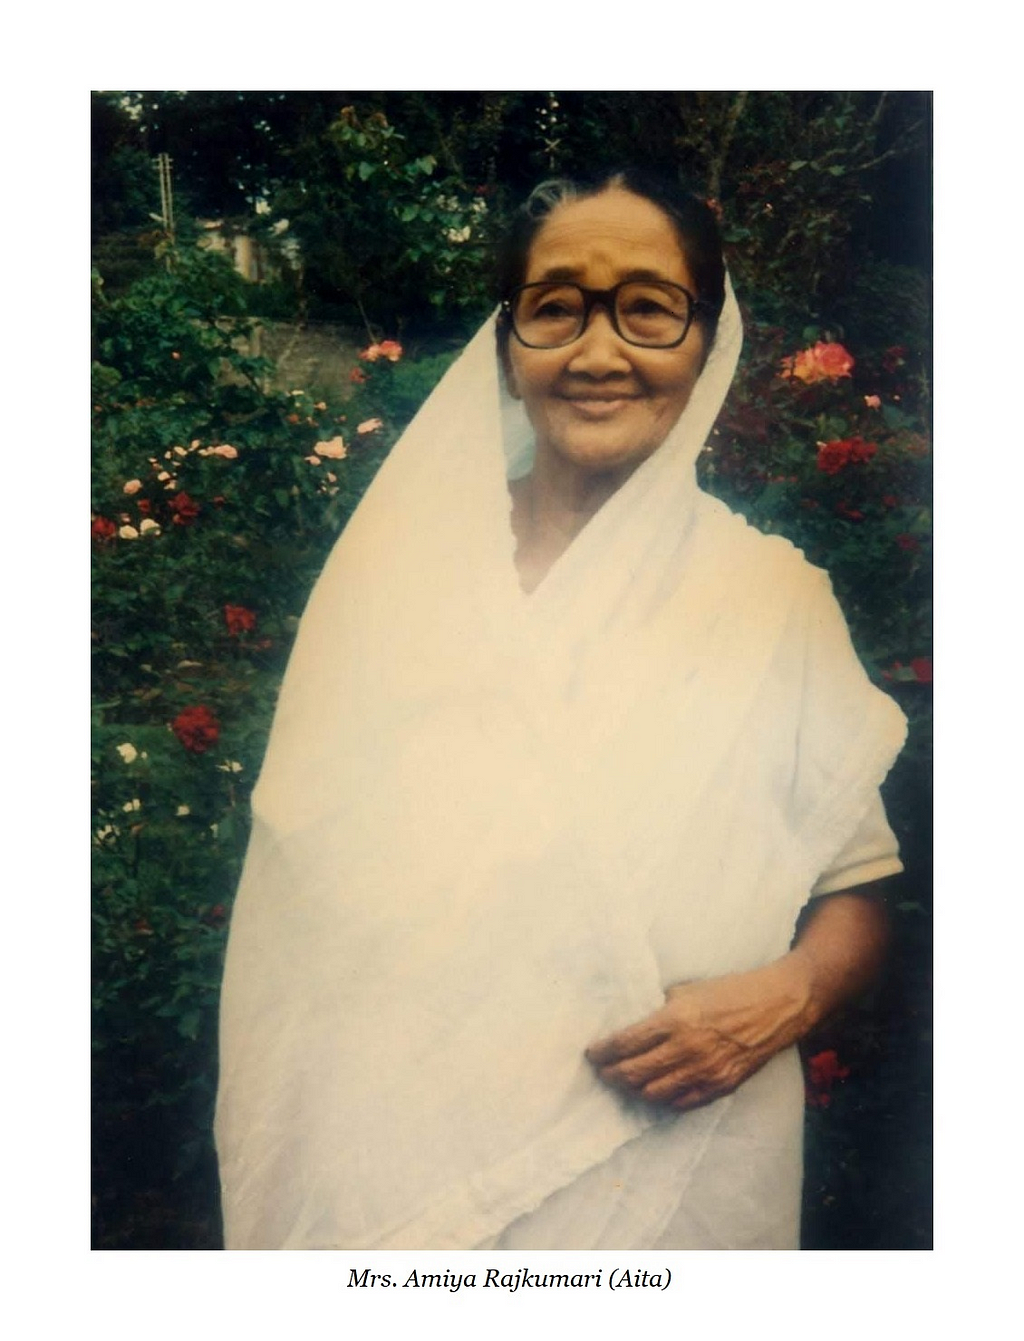 Aita — grandmother in Assamese